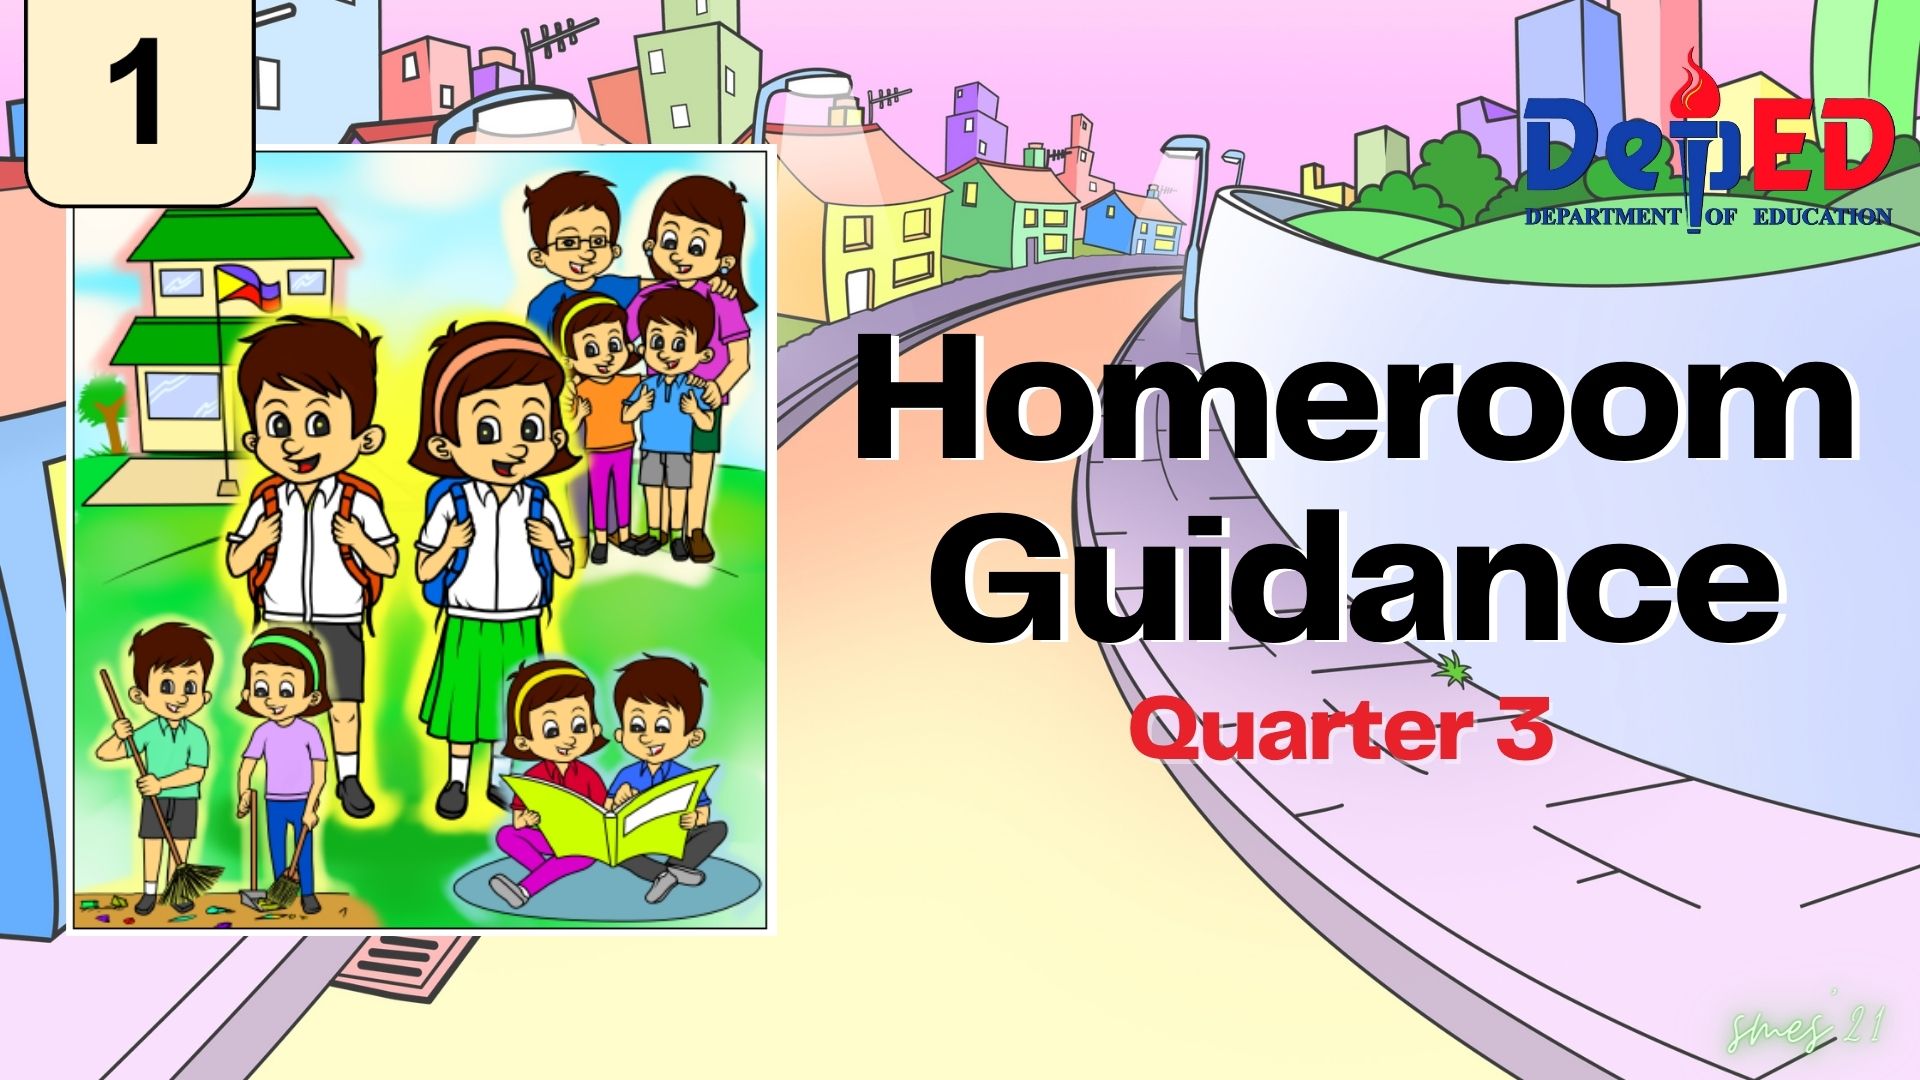 G1 - Homeroom Guidance Quarter 3